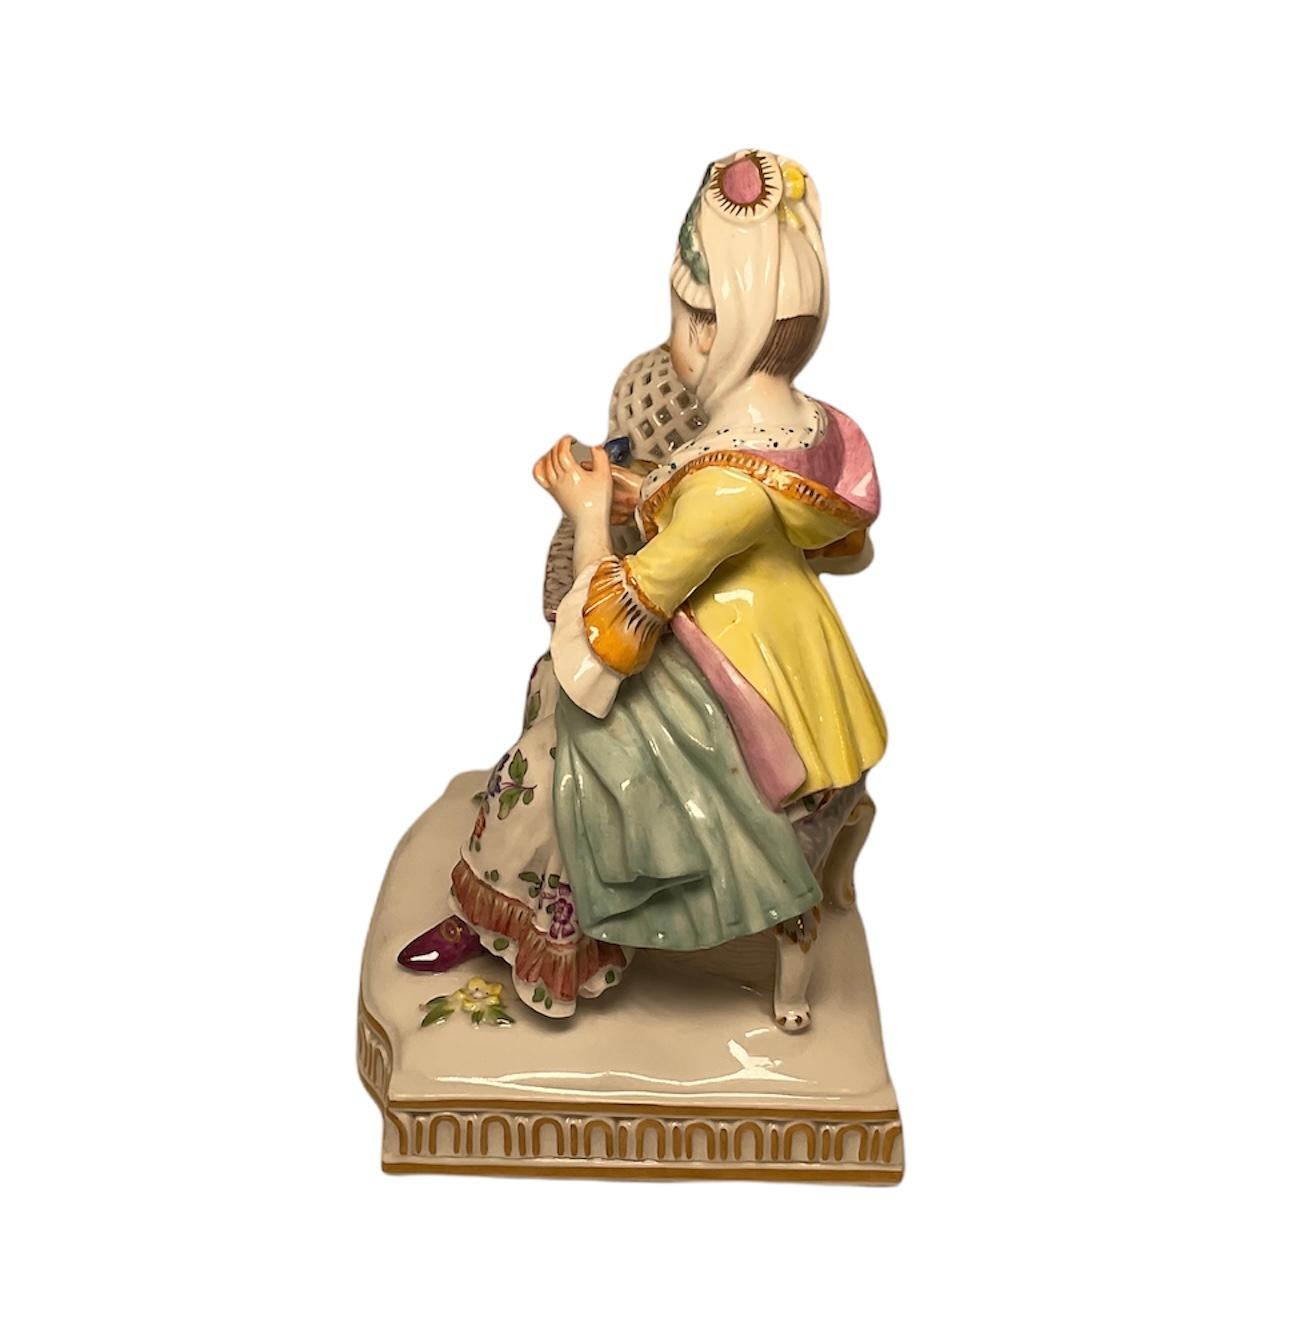 Dies ist ein Meissener Porzellan Dame Figurine, dass es Teil der Gruppe von fünf, die die fünf Sinne darstellt ist. Sie repräsentiert den Sinn für Berührung. Es zeigt eine Dame aus dem 18. Jahrhundert in einem Stuhl neben einem Beistelltisch mit